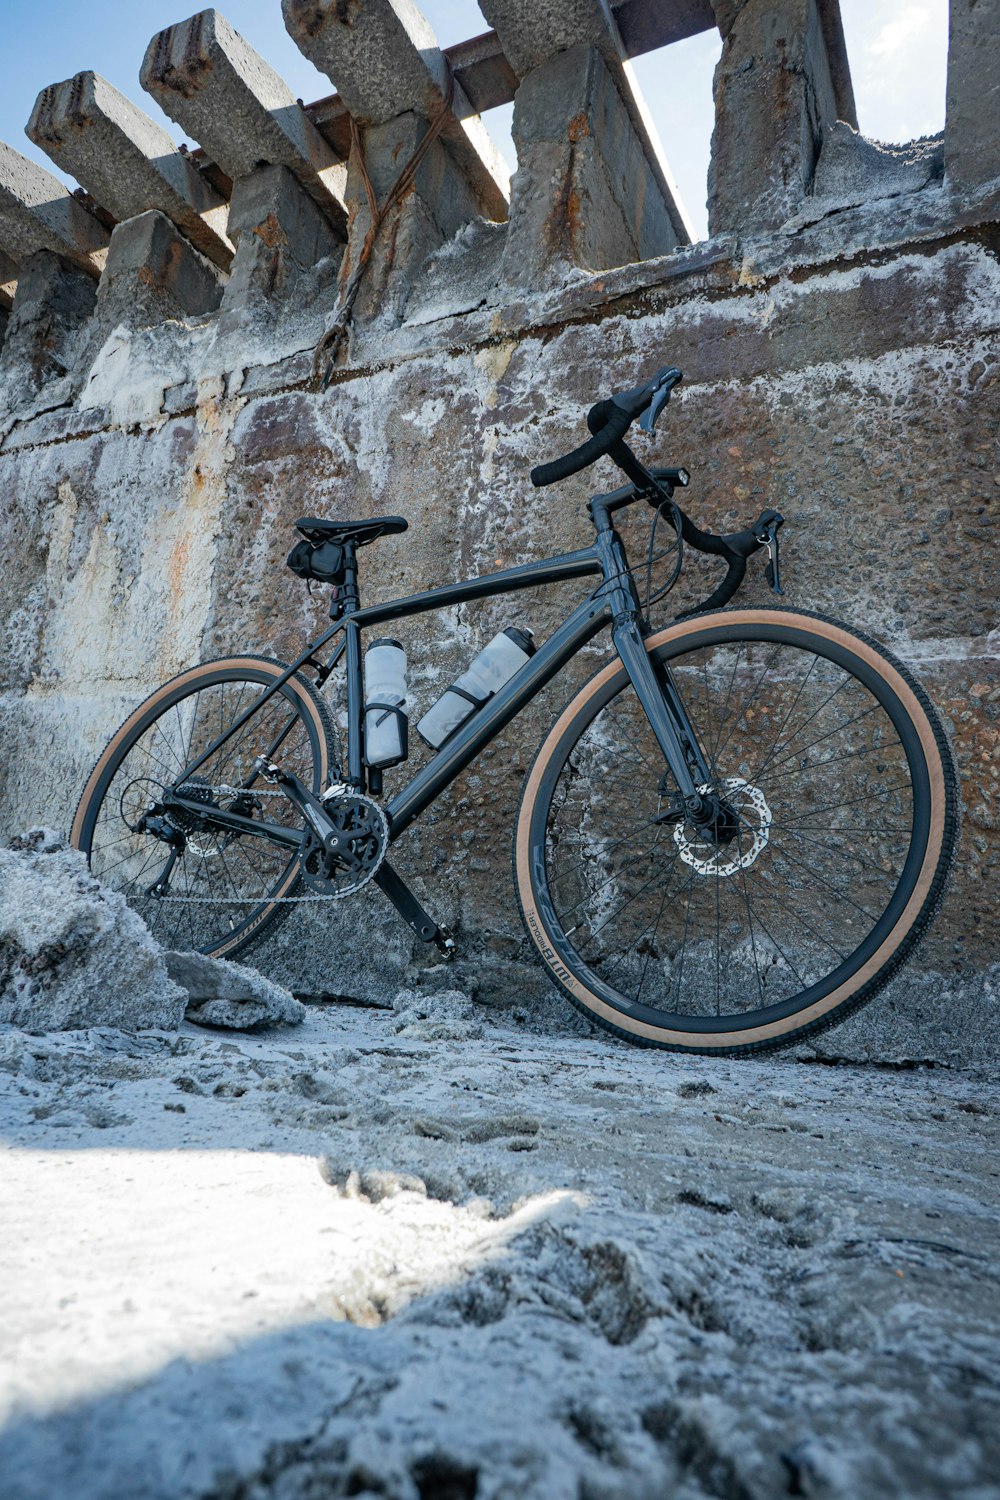 바위 표면에 주차된 자전거